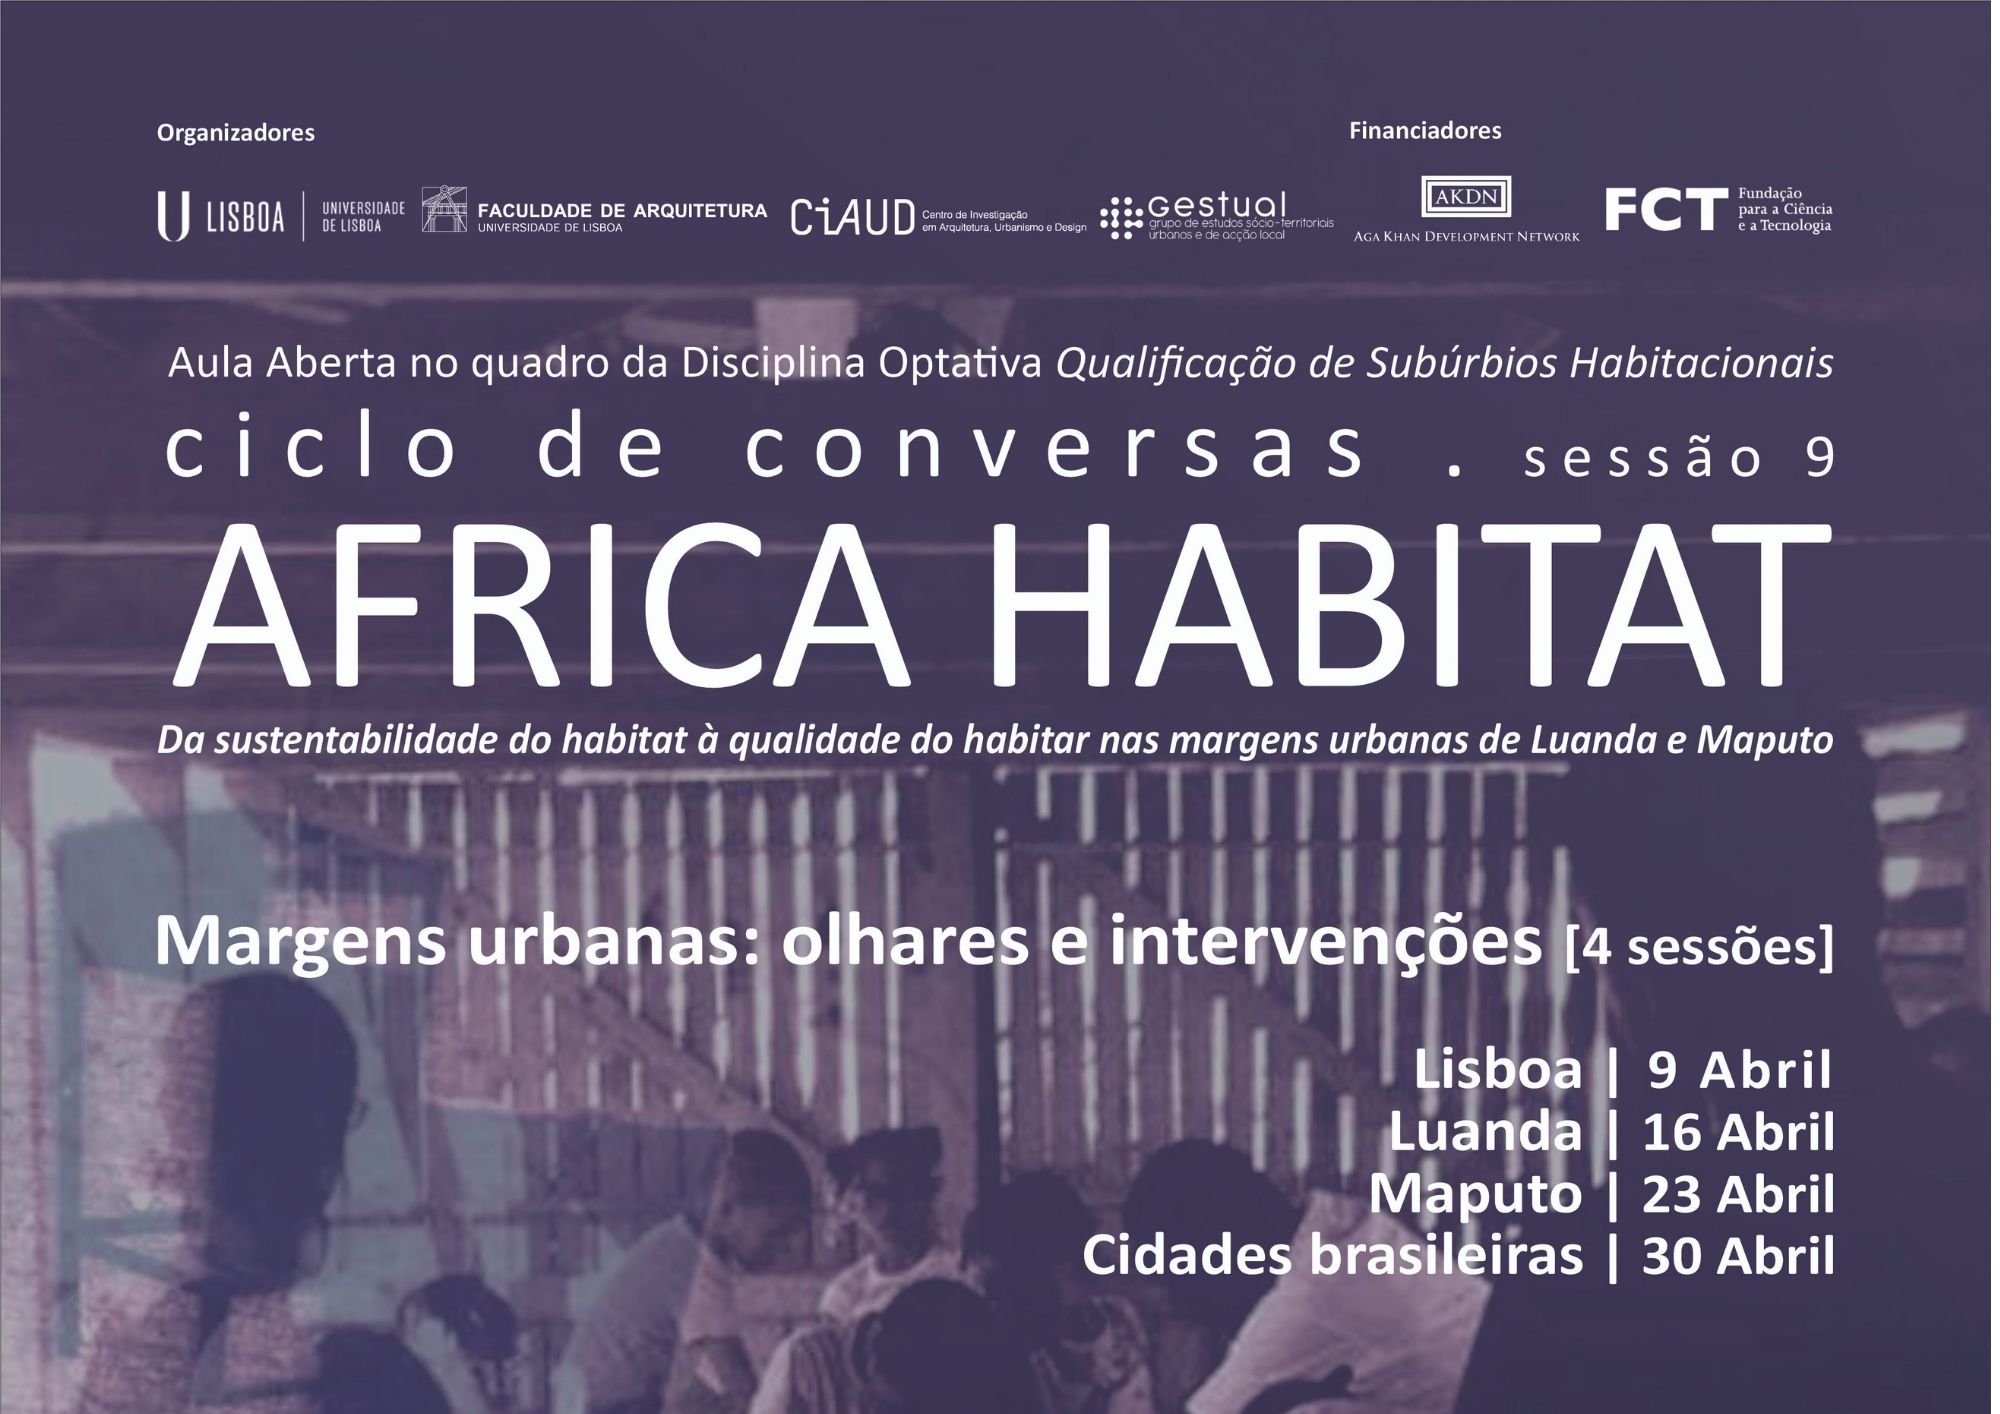 Ciclo de Conversas do Projeto África Habitat:Aula Aberta sobre Qualificação de Subúrbios Habitacionais organizada pela Professora Isabel Raposo, 9, 16, 23 e 30 de abril